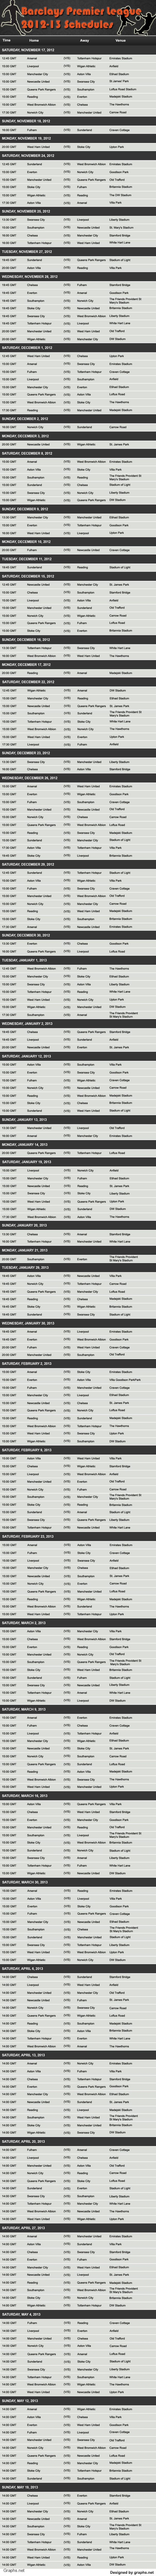 Fixtures of Barclays Premier League 2012 - 2013